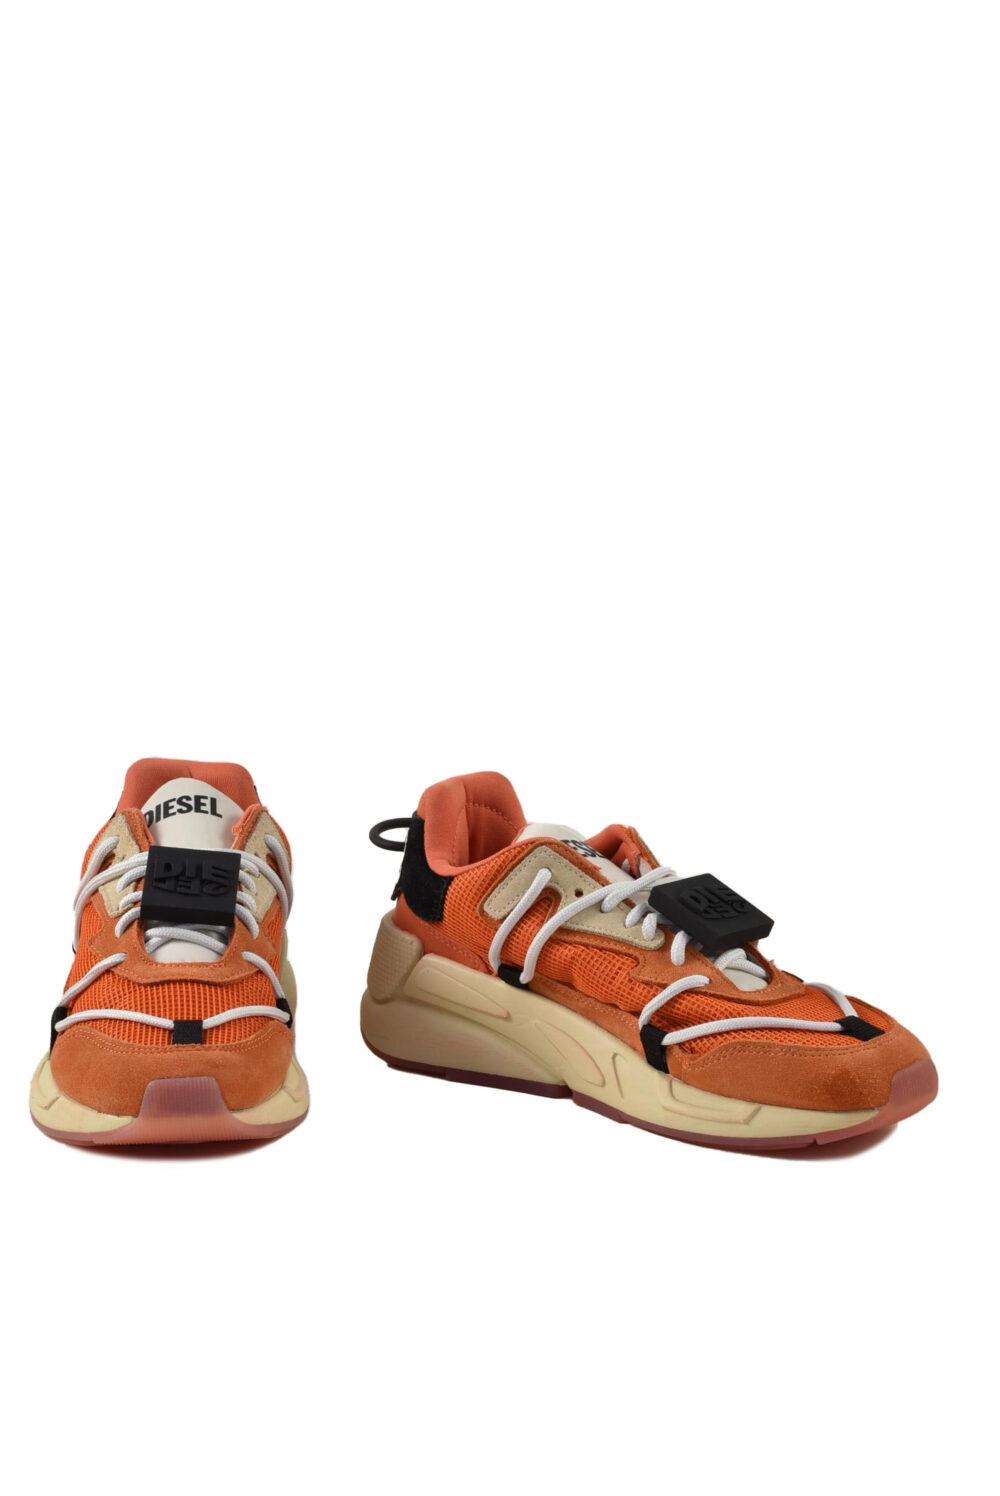 Sneakers Diesel Arancione - Foto 2